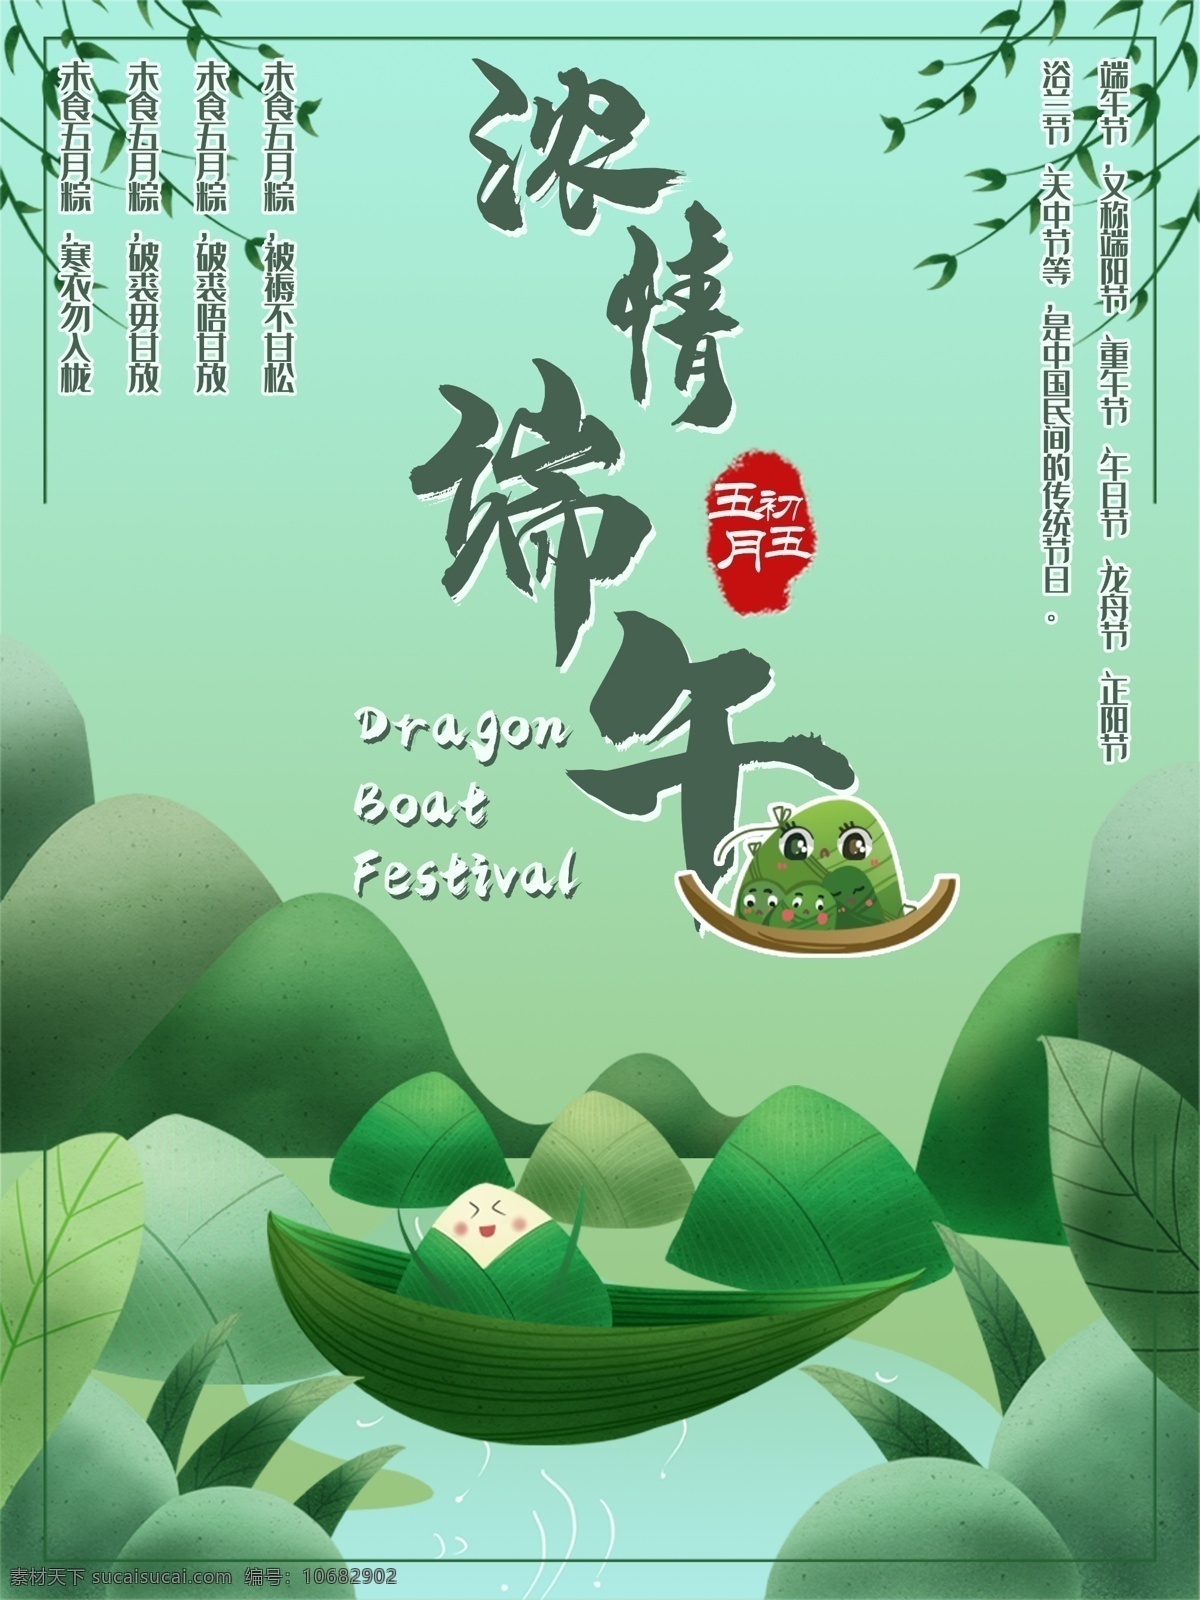 中国 传统节日 端午 主题 海报 中国传统节日 节日海报 端午节 浓情端午 五月初五 绿色 粽子 山水 柳树